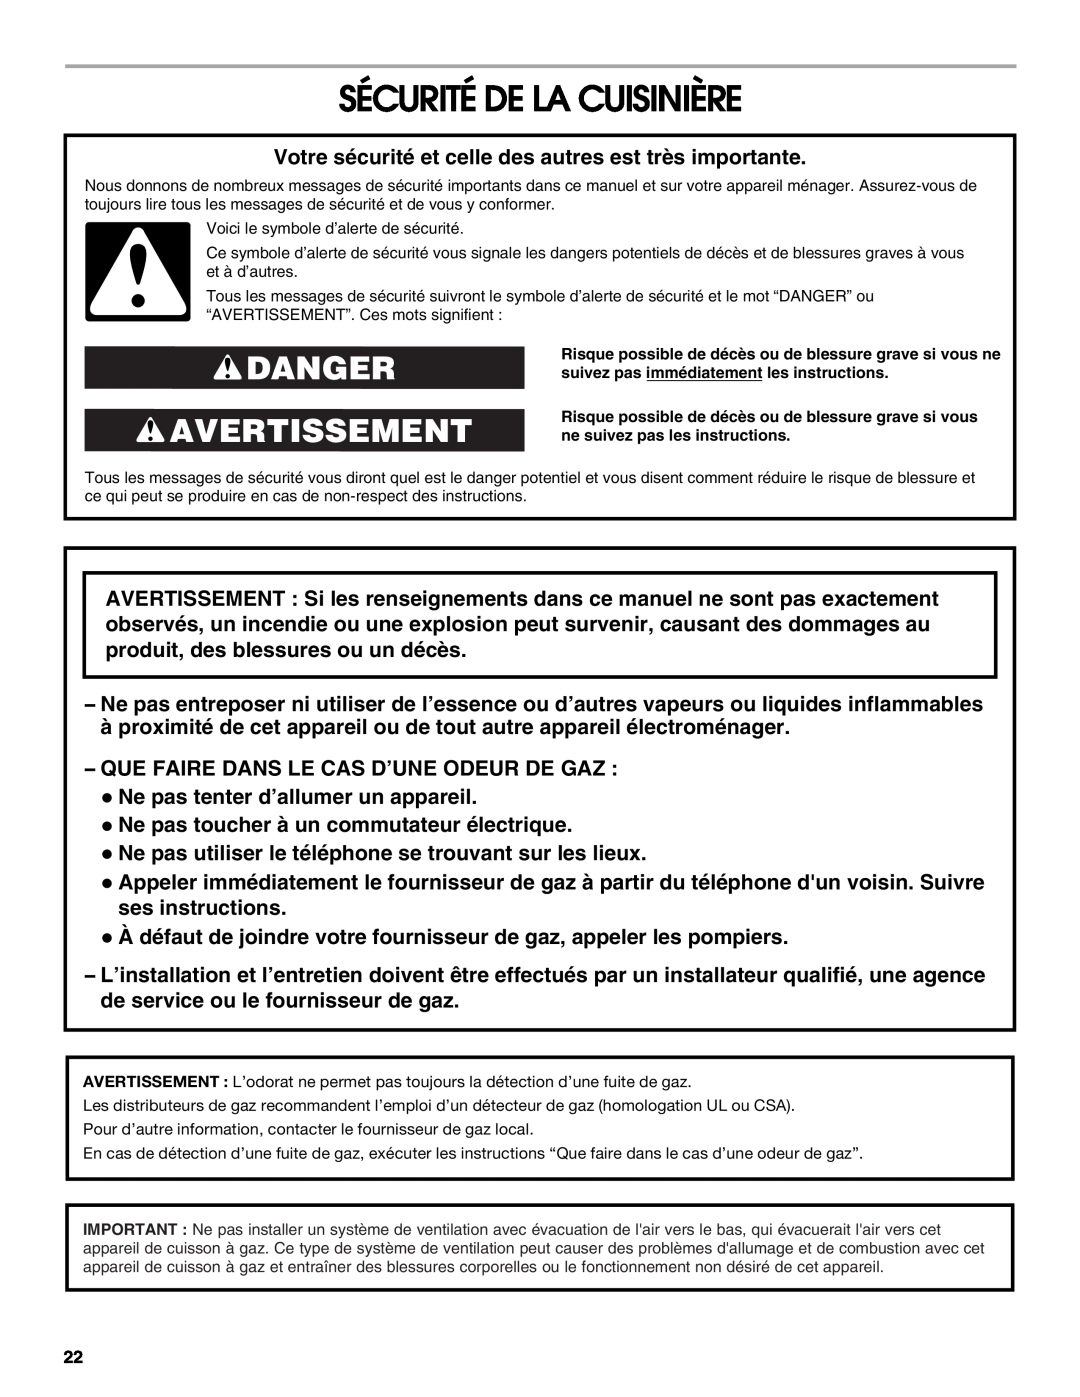 KitchenAid W10526086A installation instructions Sécurité De La Cuisinière, Danger Avertissement 